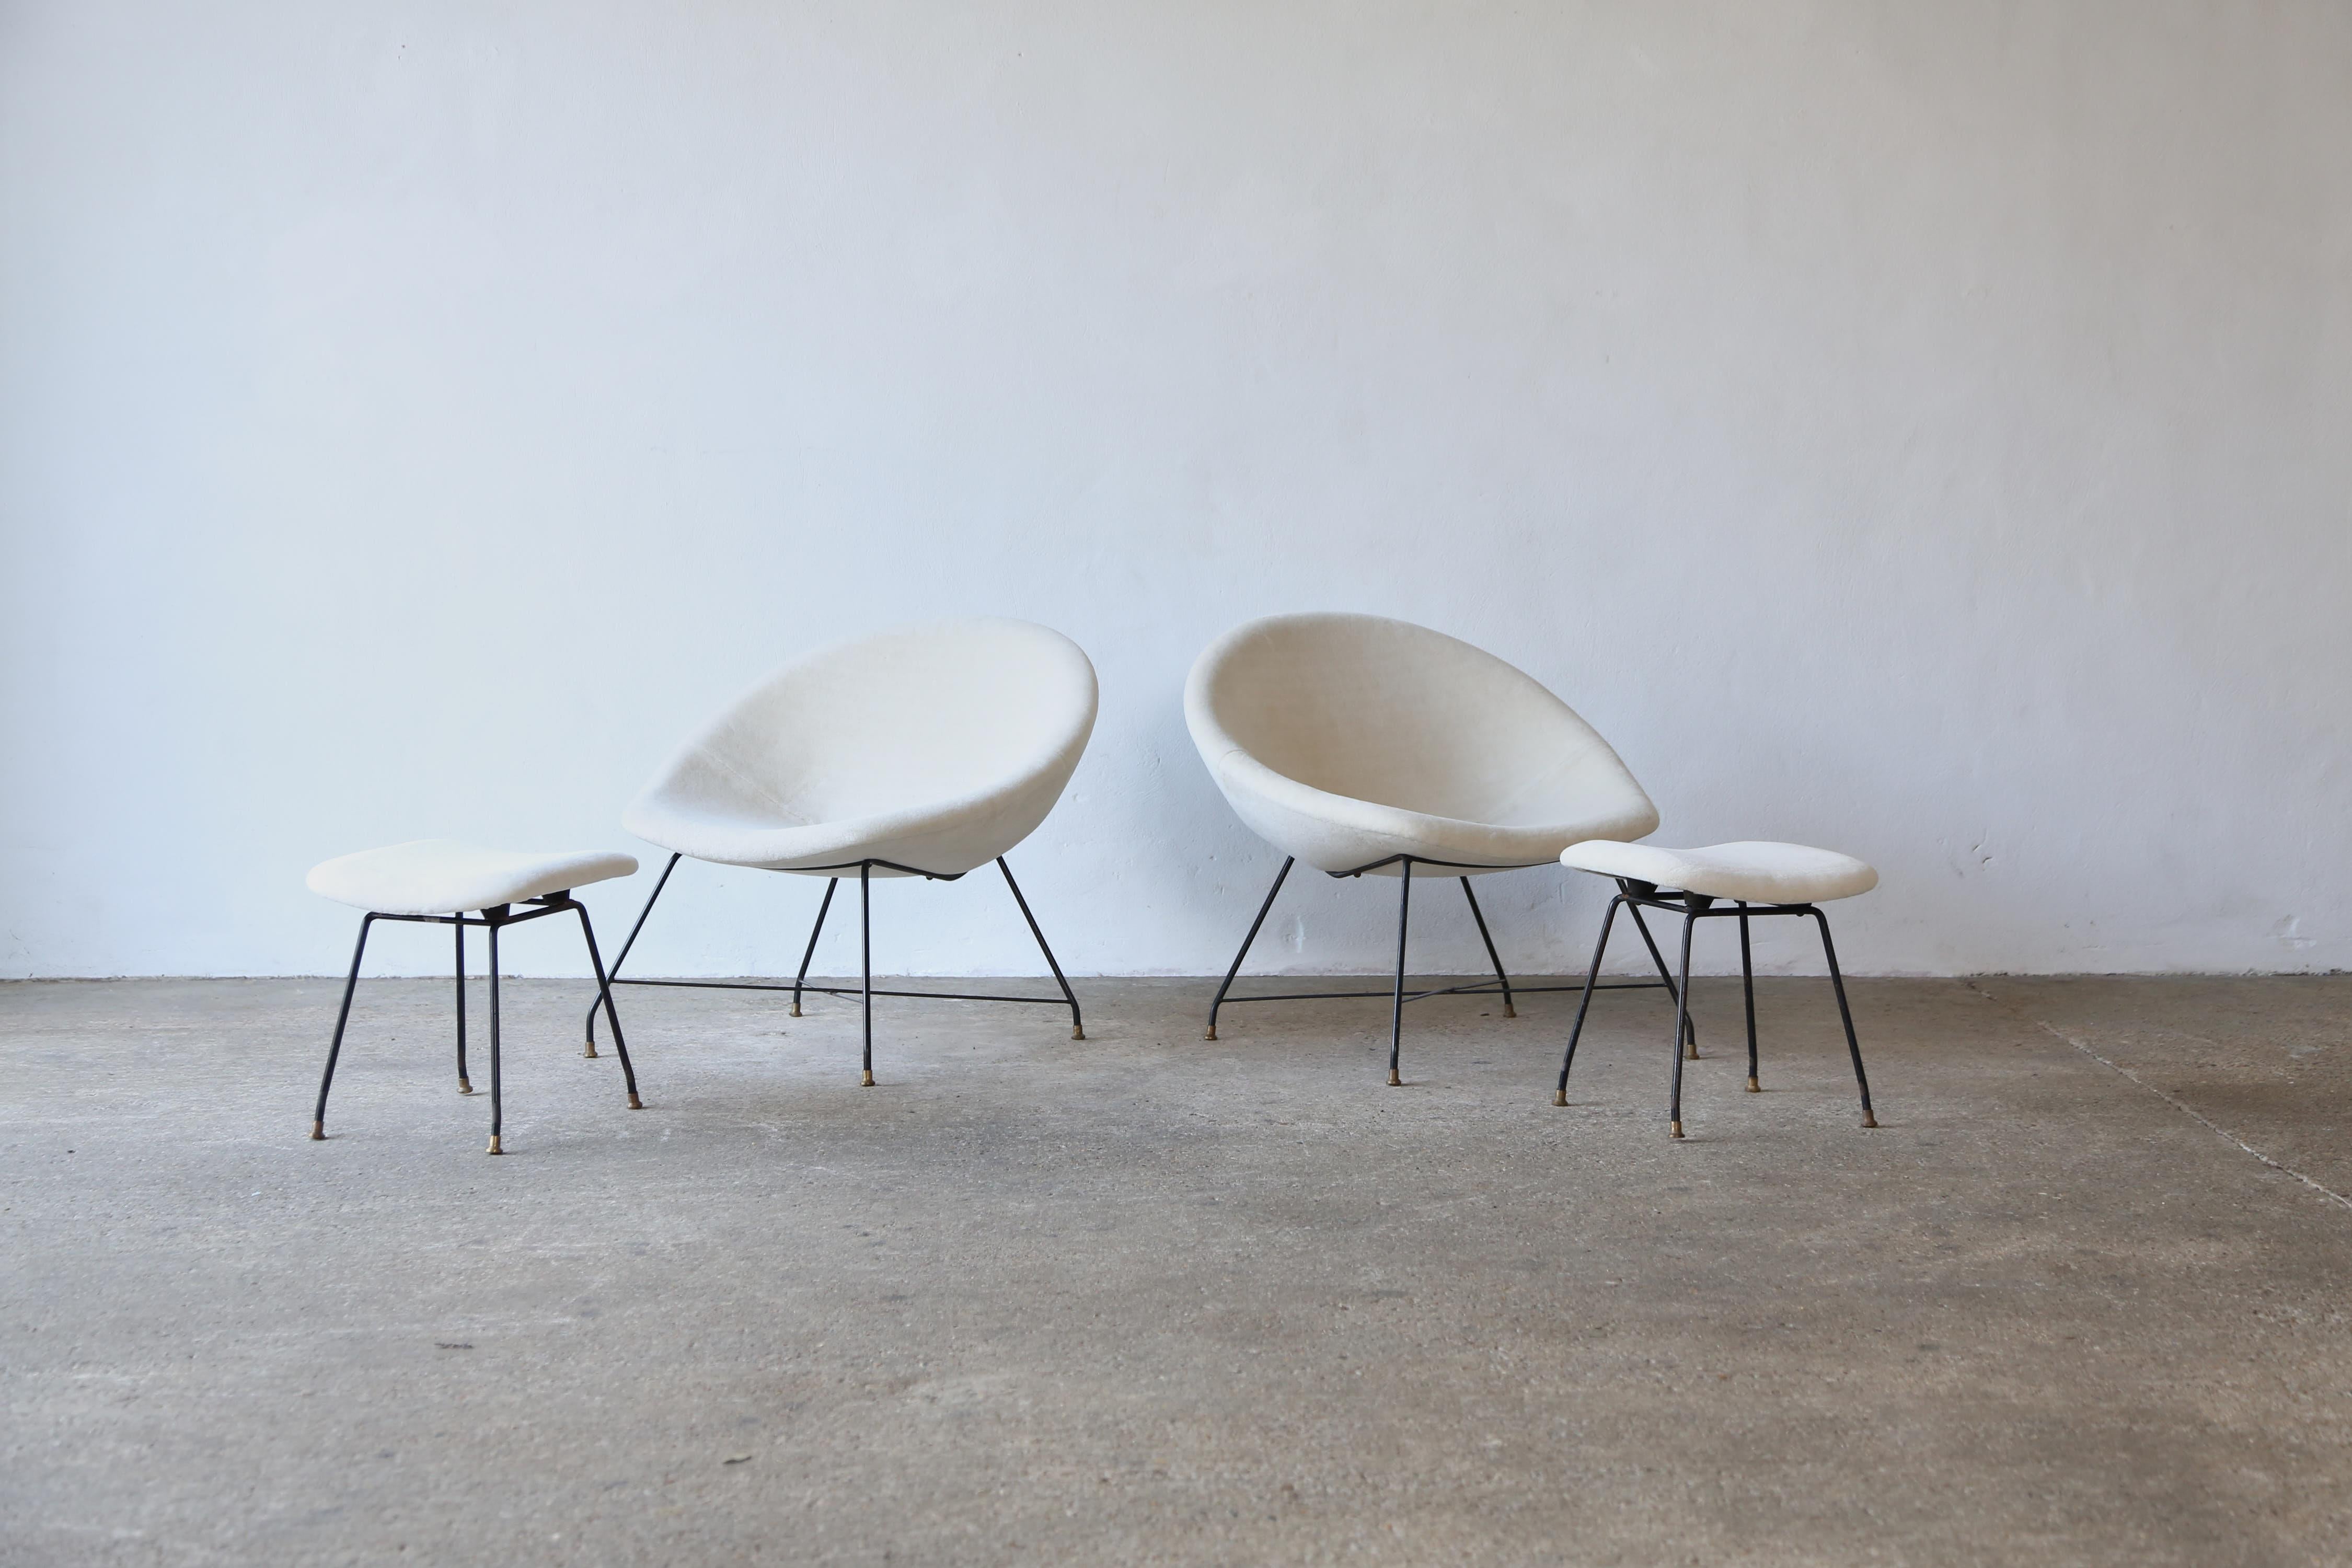 Merveilleuse paire de chaises longues avec ottomans conçue par Augusto Bozzi pour Saporiti Italia, Italie, 1954. Les chaises et les tabourets ont une base en métal laqué noir avec des pieds en laiton massif et sont tapissés de tissu Rose Uniacke